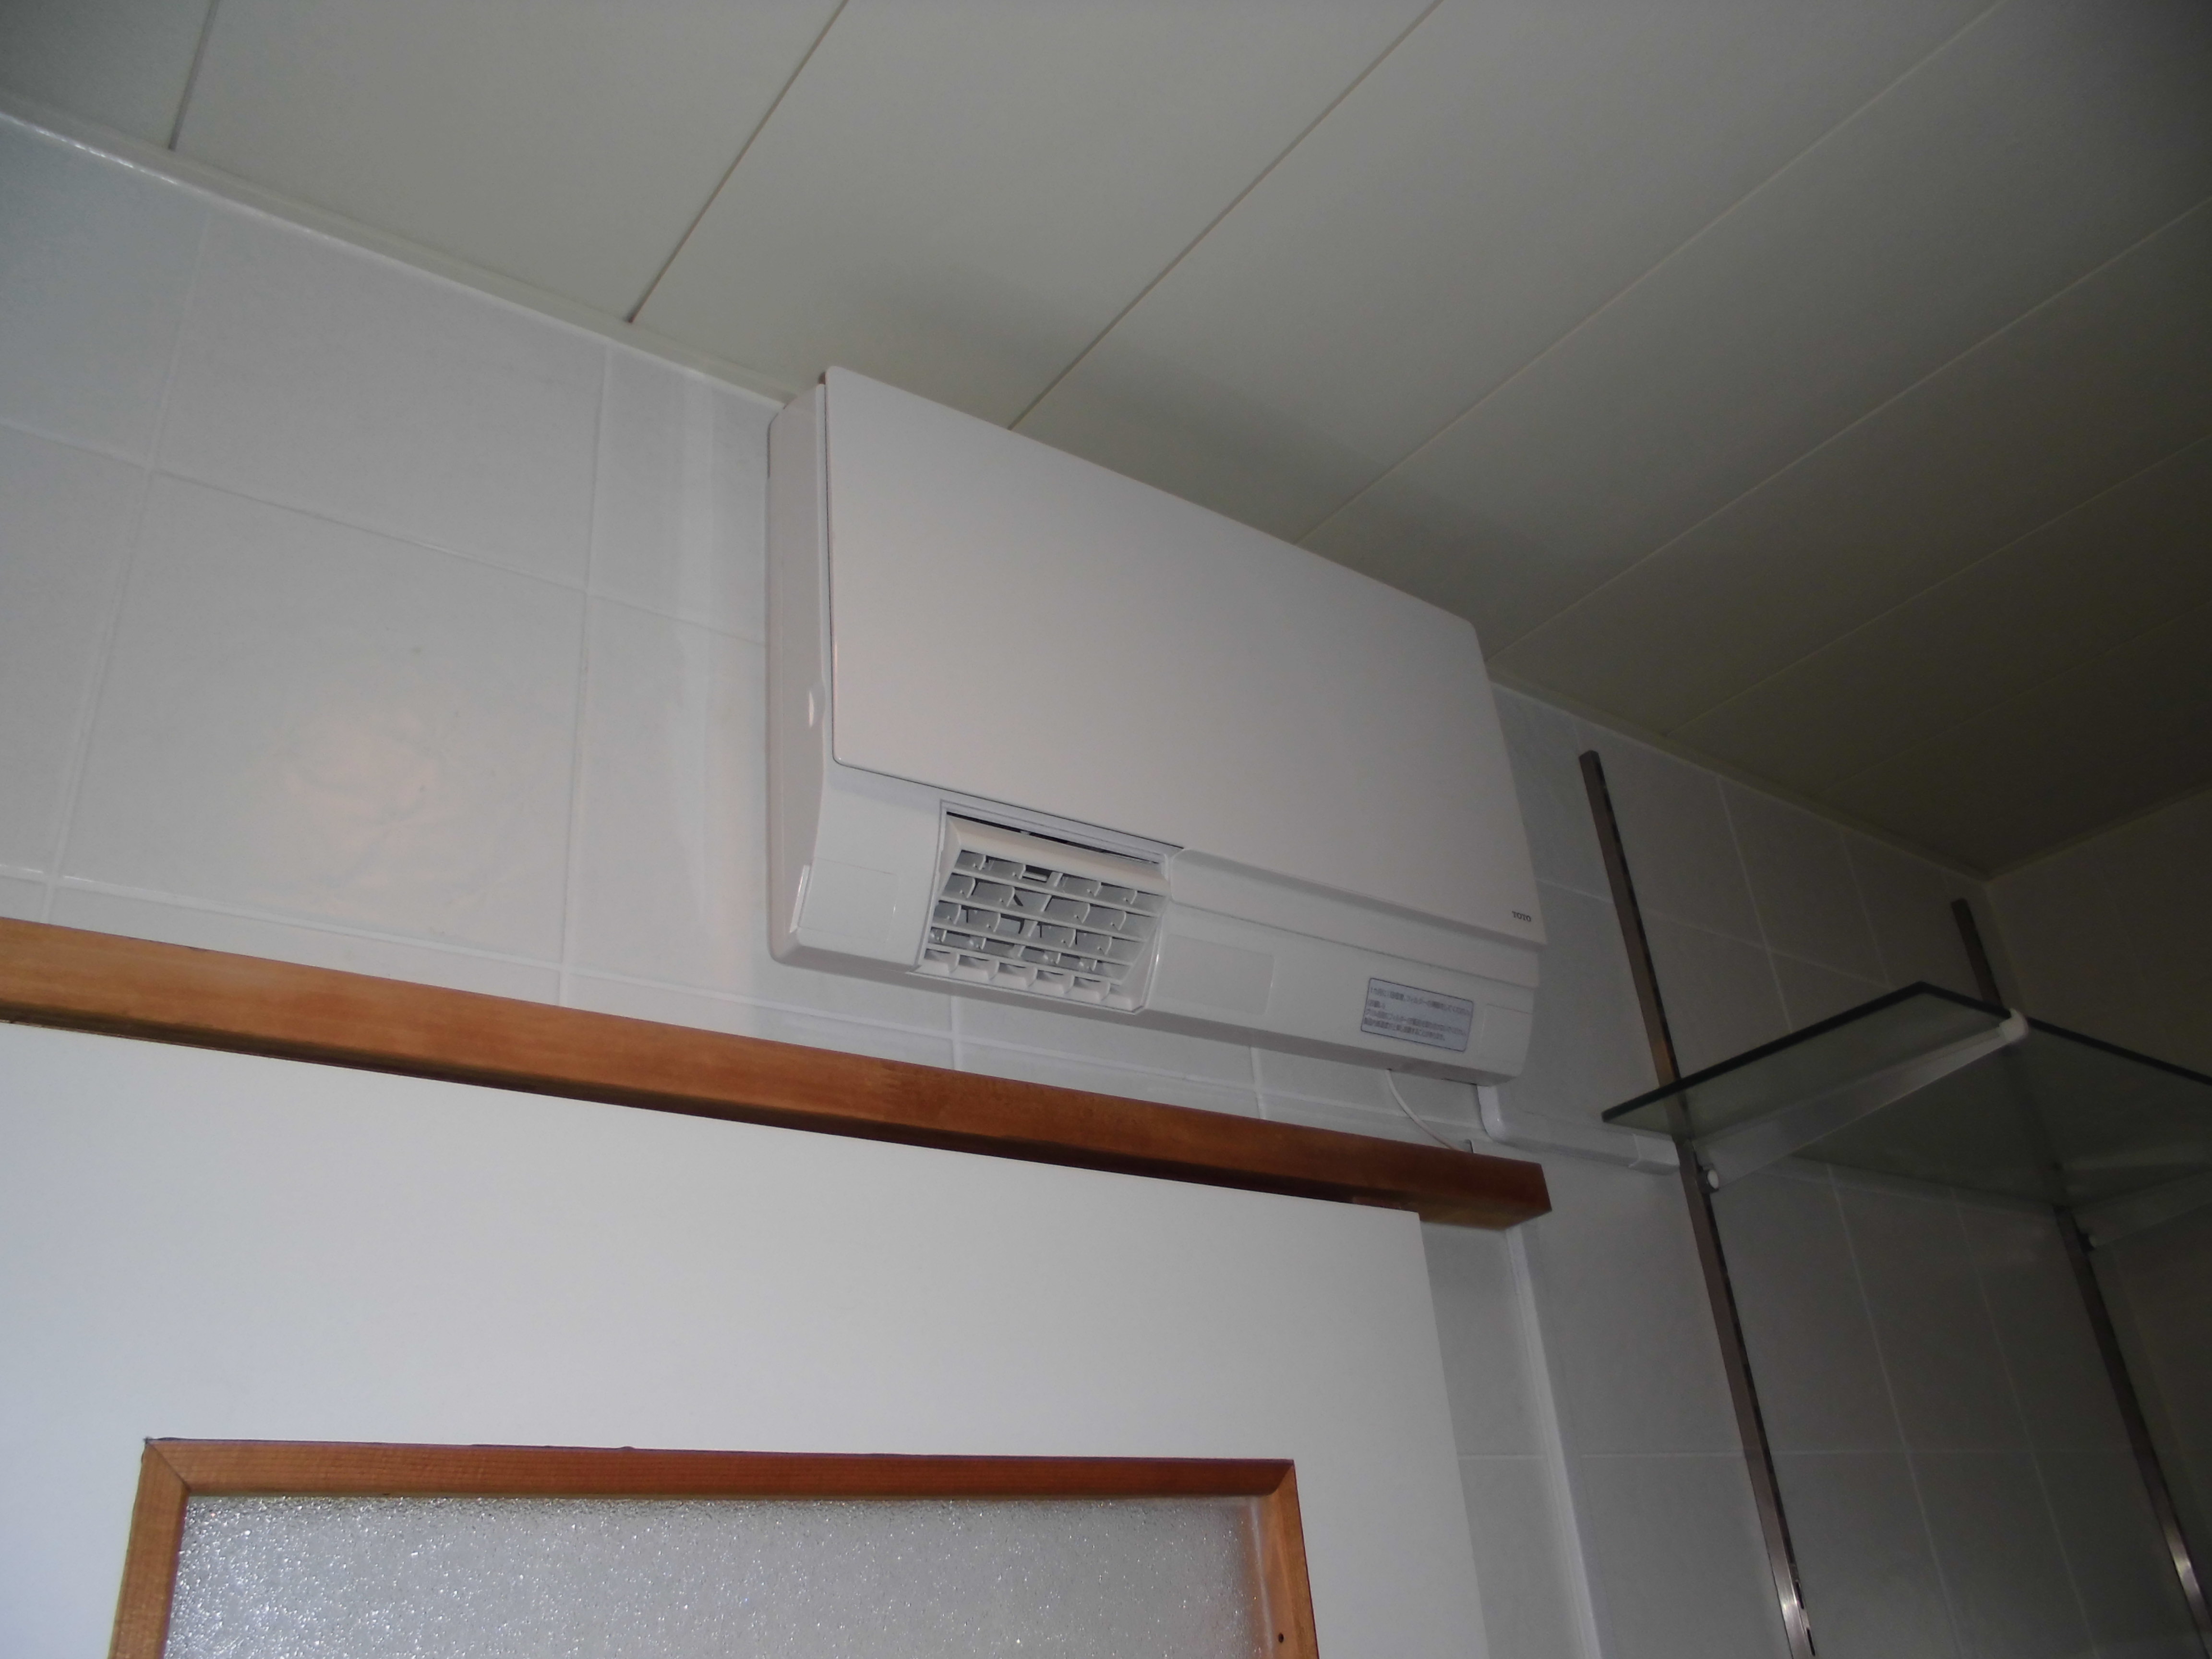 洗面所暖房機 取付 - 営業マンの頑張る日記